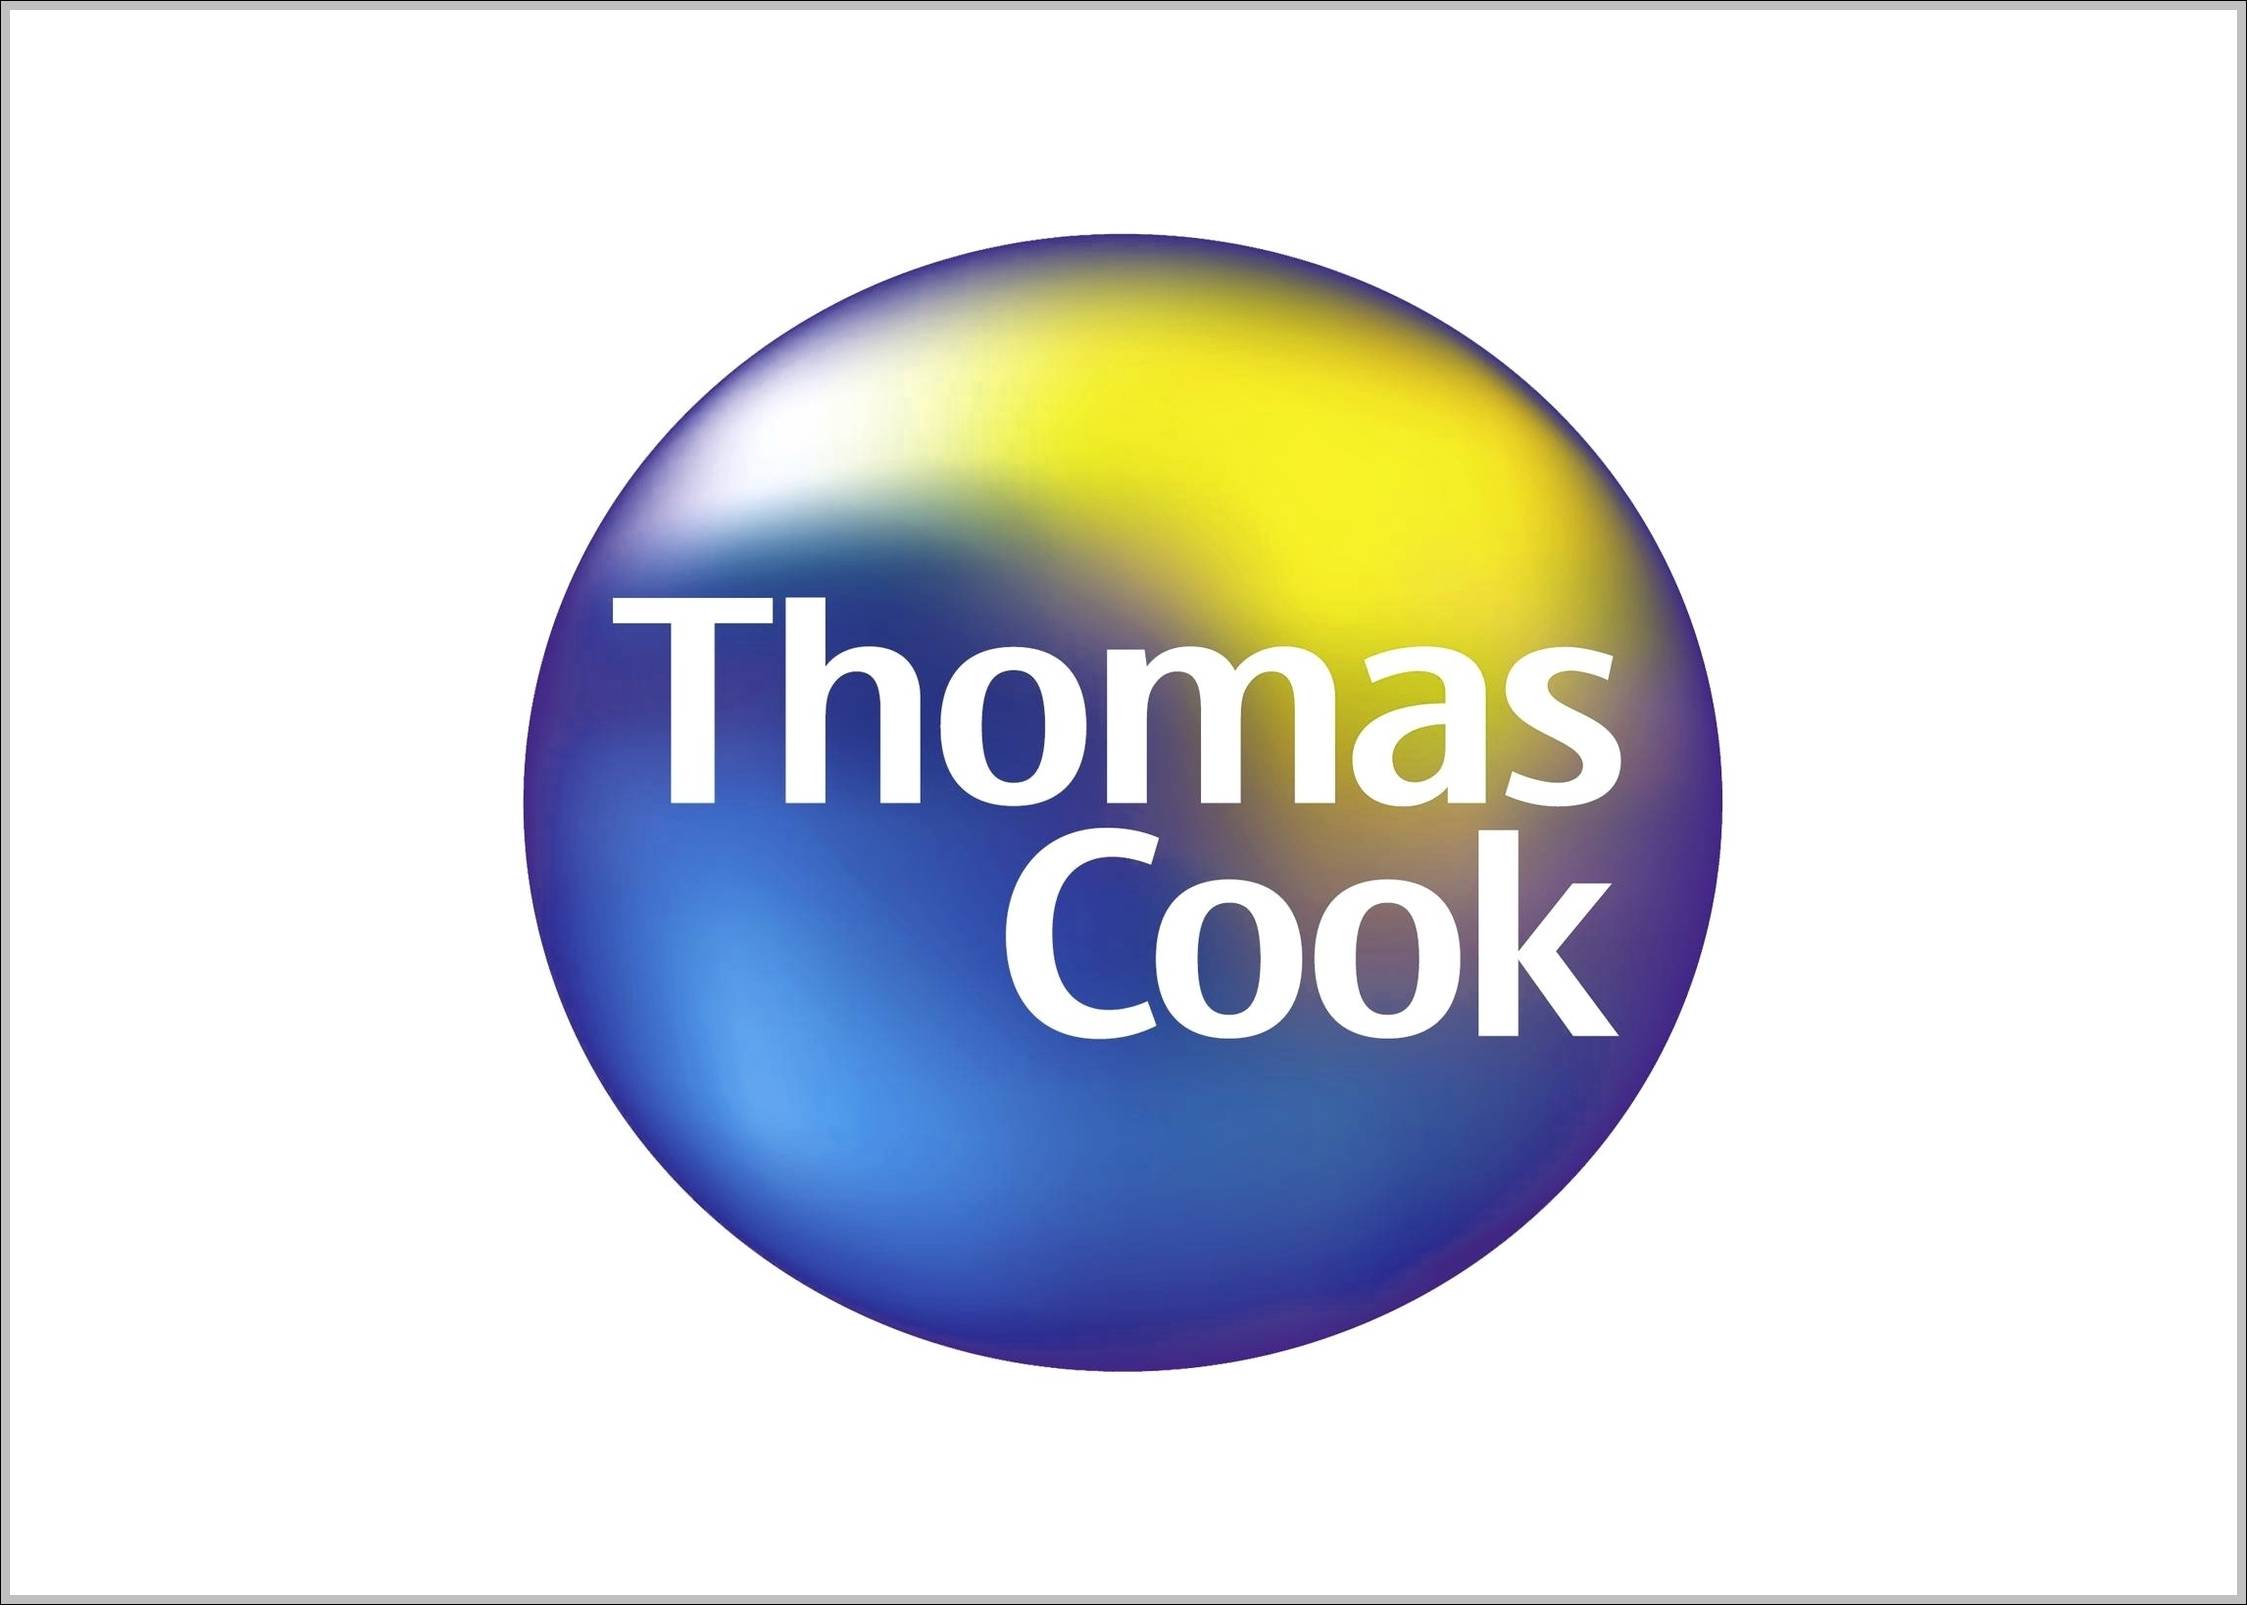 Thomas Cook logo 2001